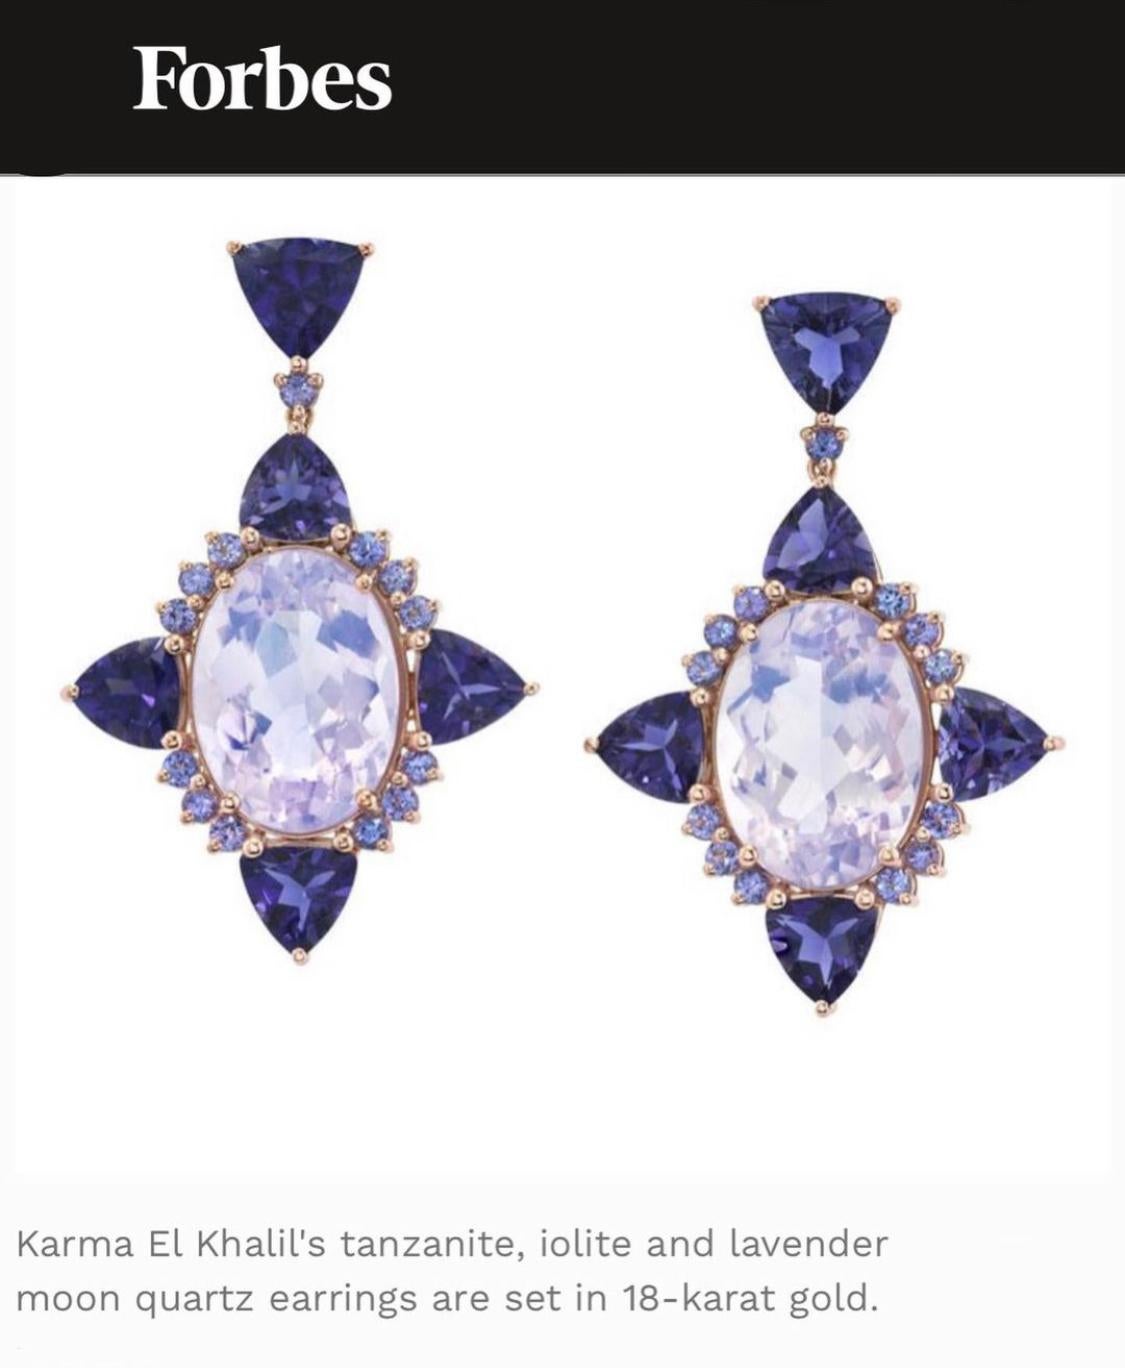 Die Lilac Nova Ohrringe von Karma El Khalil sind in leuchtenden Violett-, Indigo- und Lavendeltönen gehalten. Jeder Ohrring ist ein eleganter Wasserfall aus Lavendelquarz, Iolith und Tansanit, individuell geschliffenen trillionen, runden und ovalen